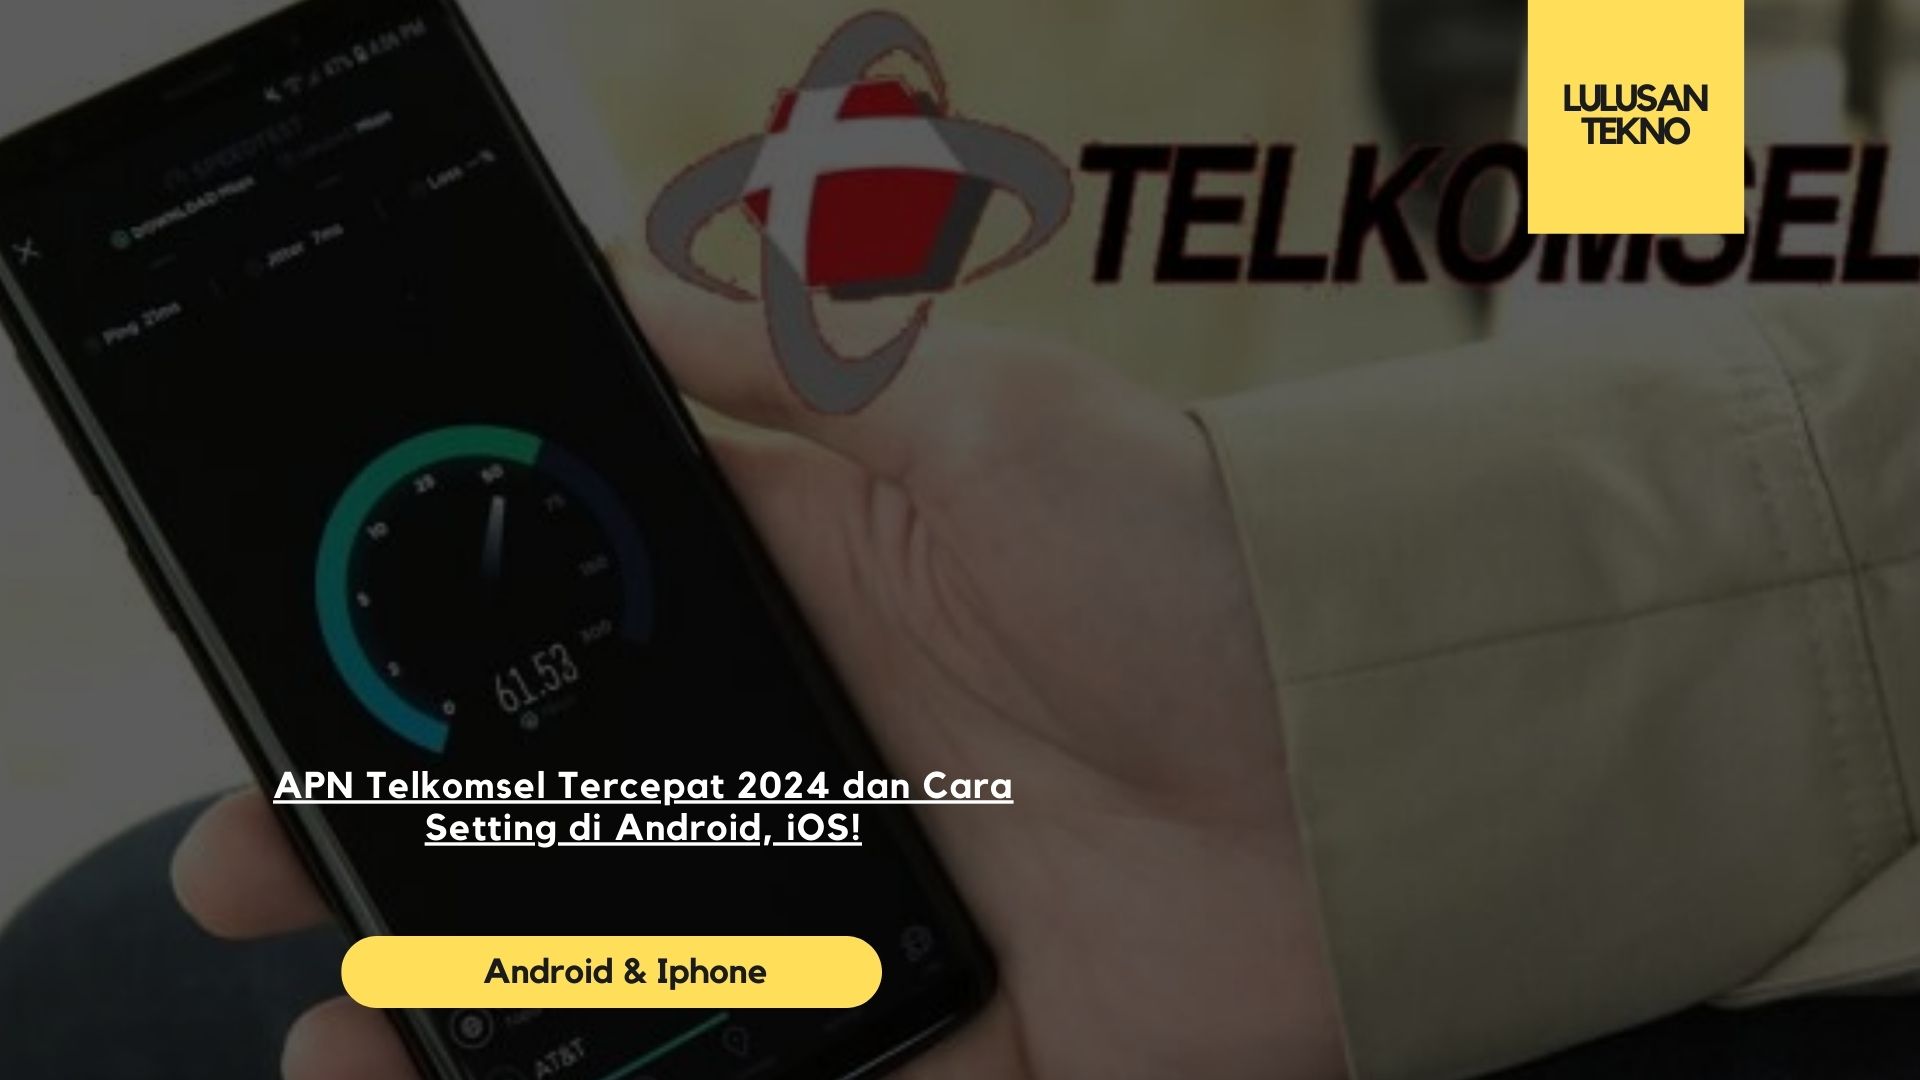 APN Telkomsel Tercepat 2024 dan Cara Setting di Android, iOS!